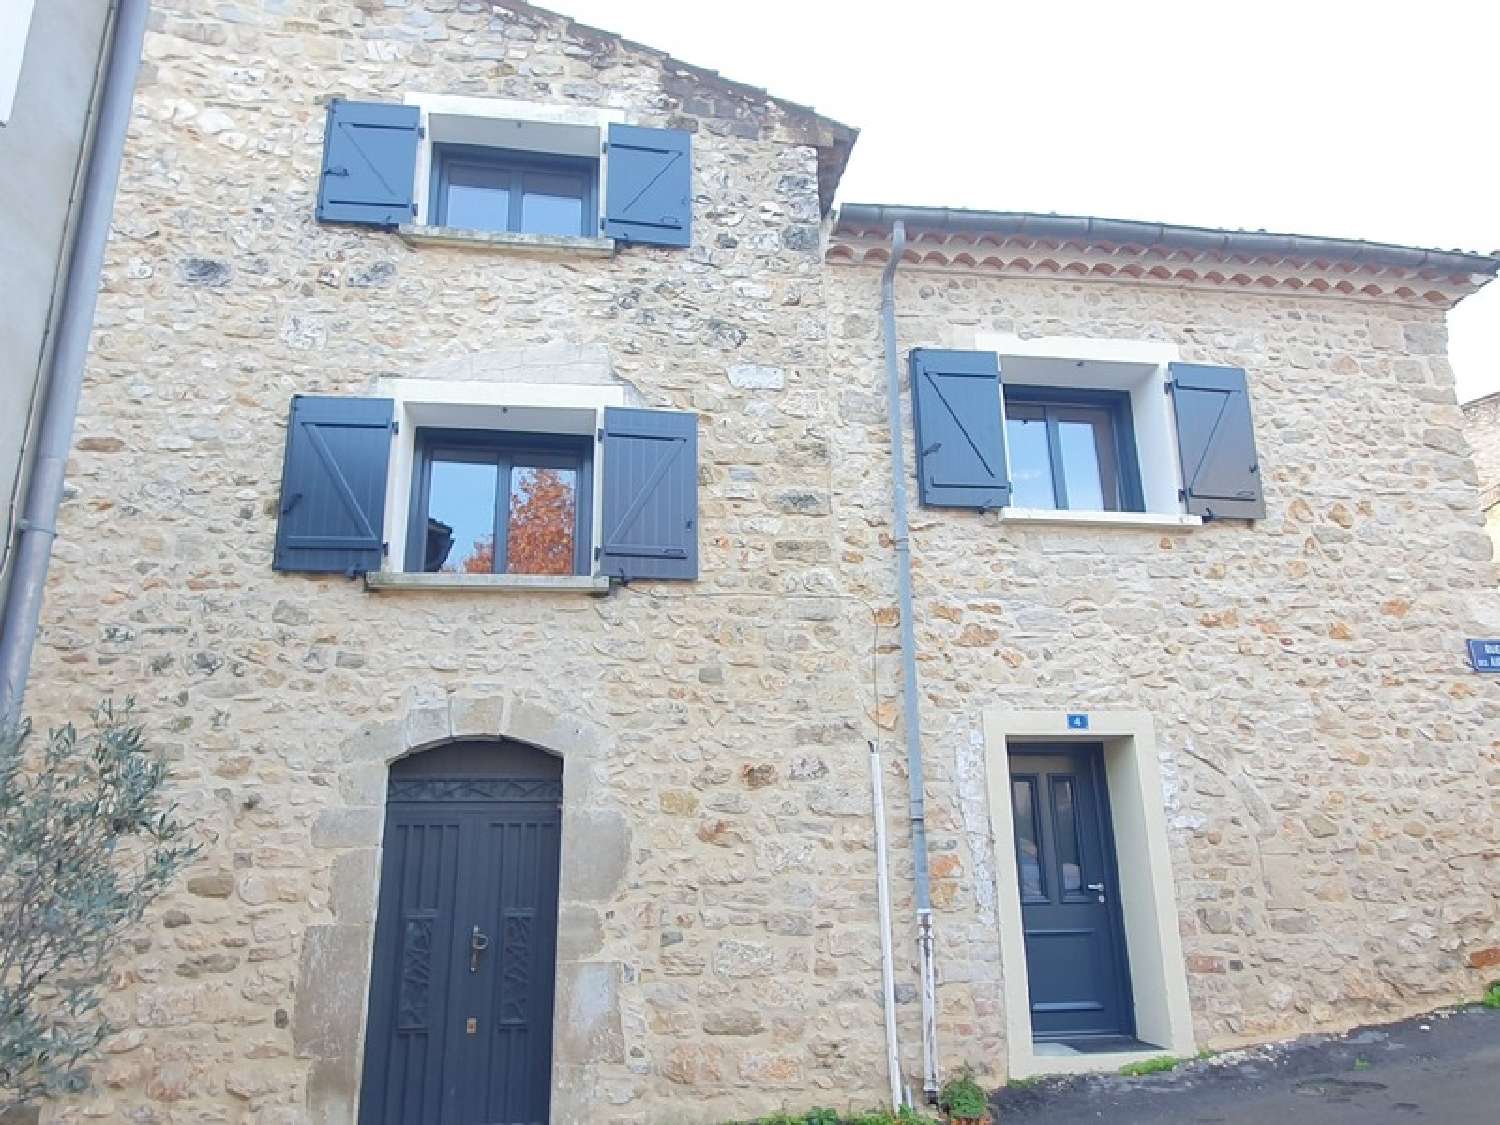  à vendre maison de village Boucoiran-et-Nozières Gard 1